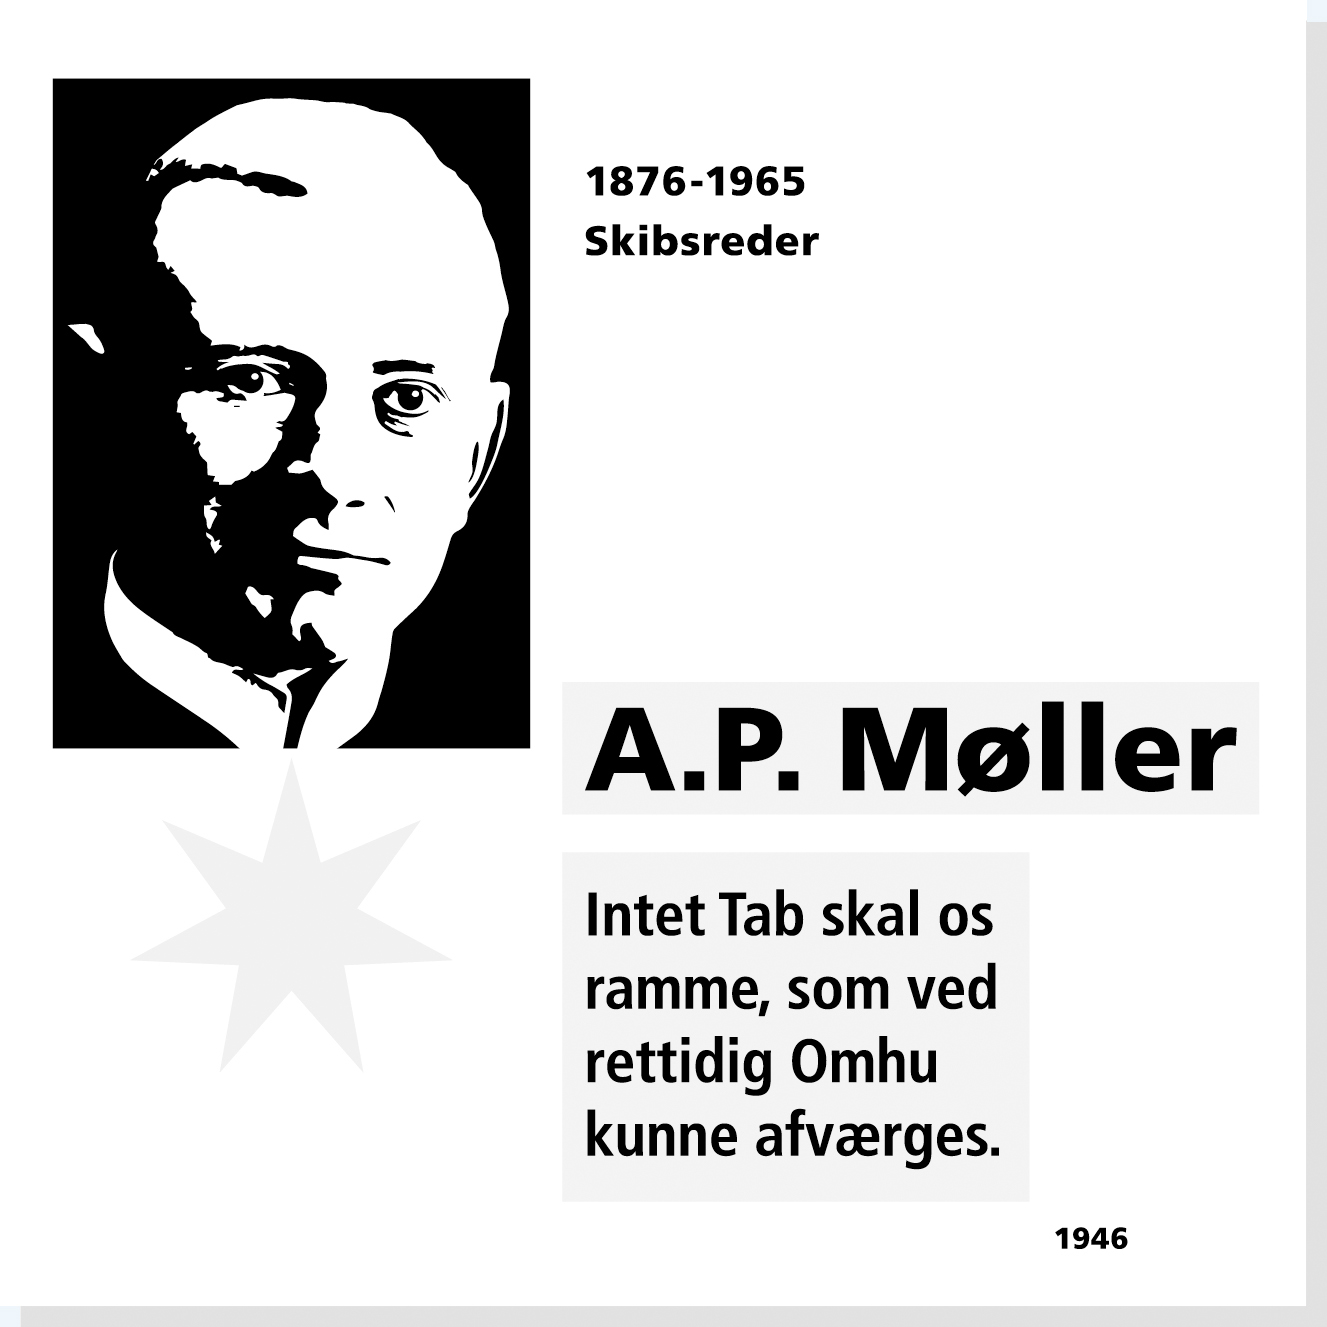 A.P. Møller er en af Rysensteens 22 udvalgte danske dannelsespersoner